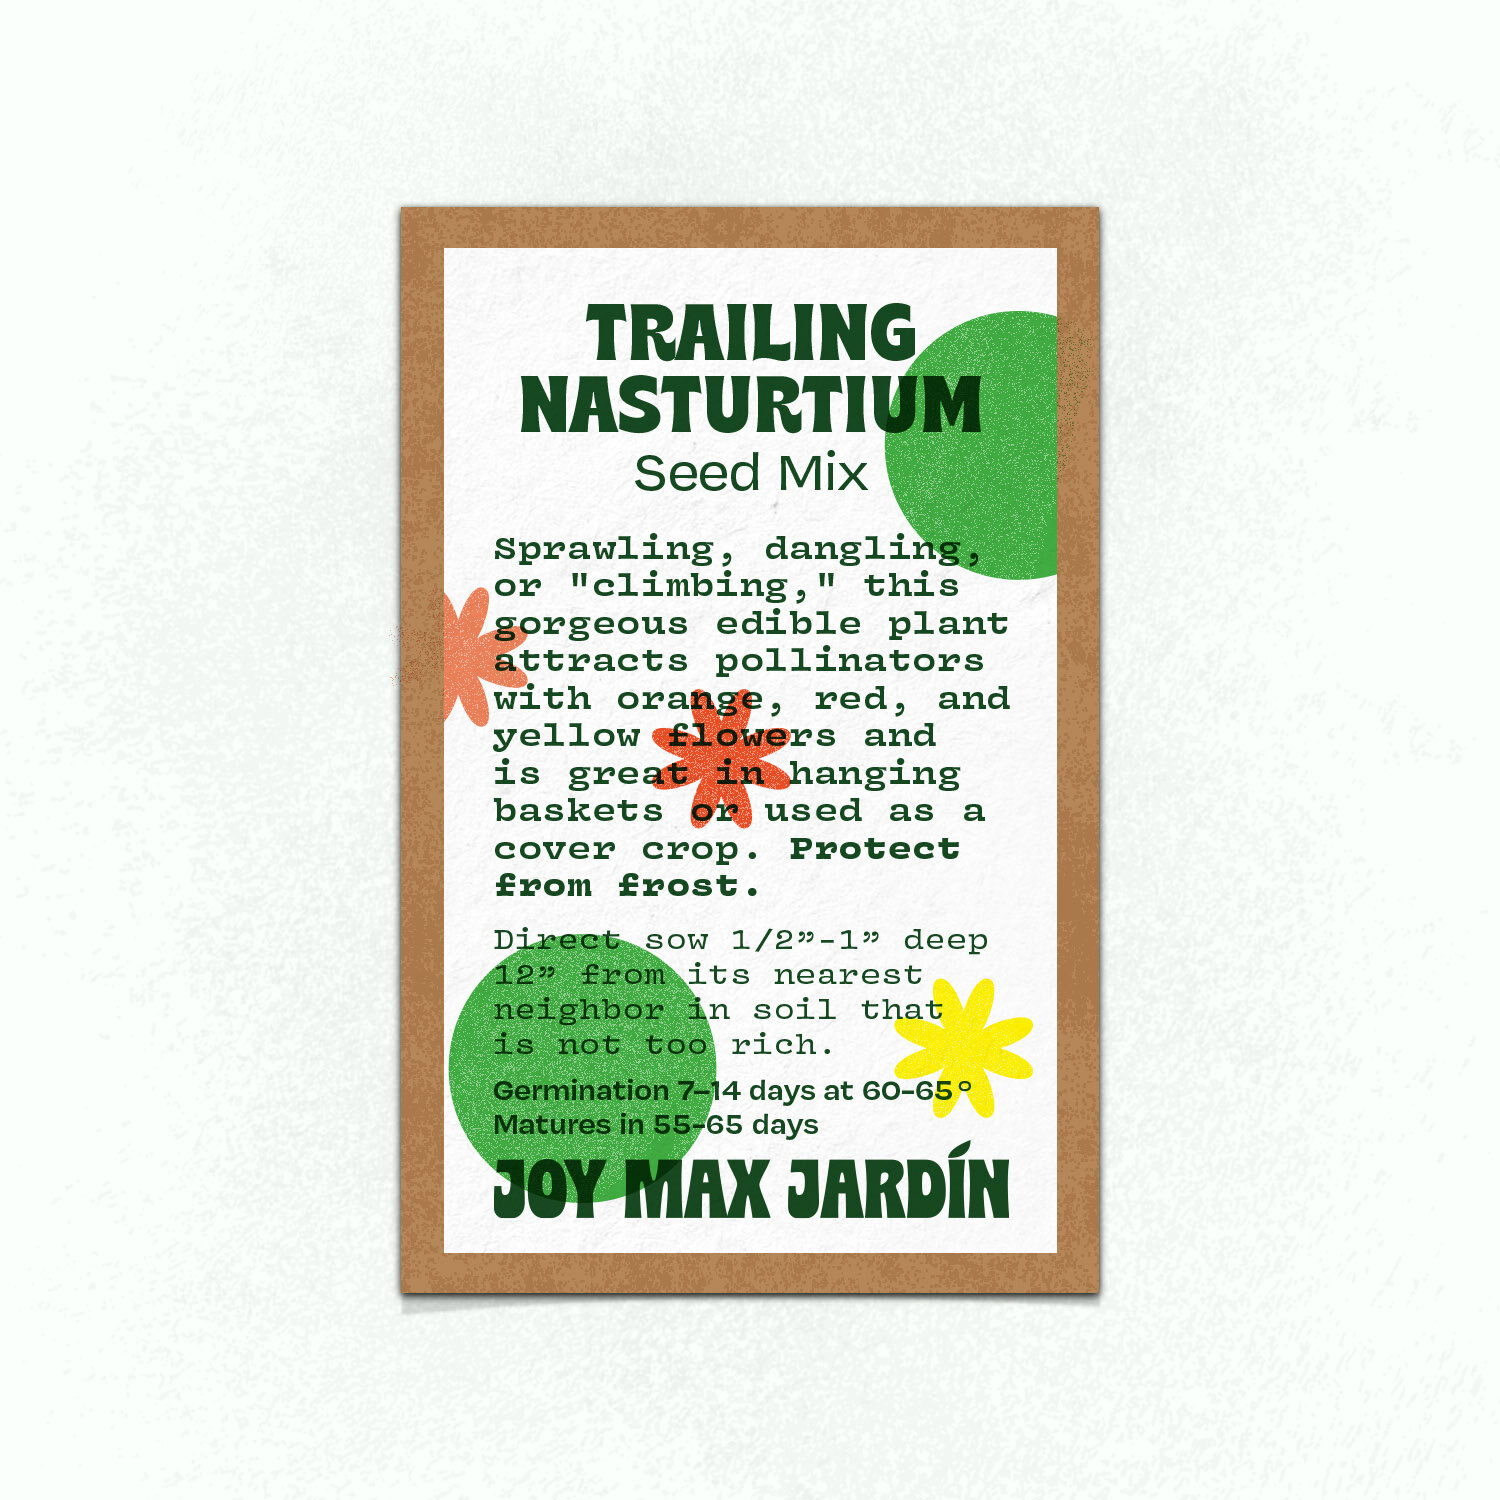 Joy Max Jardin trailing Nasturtium Seed.jpg